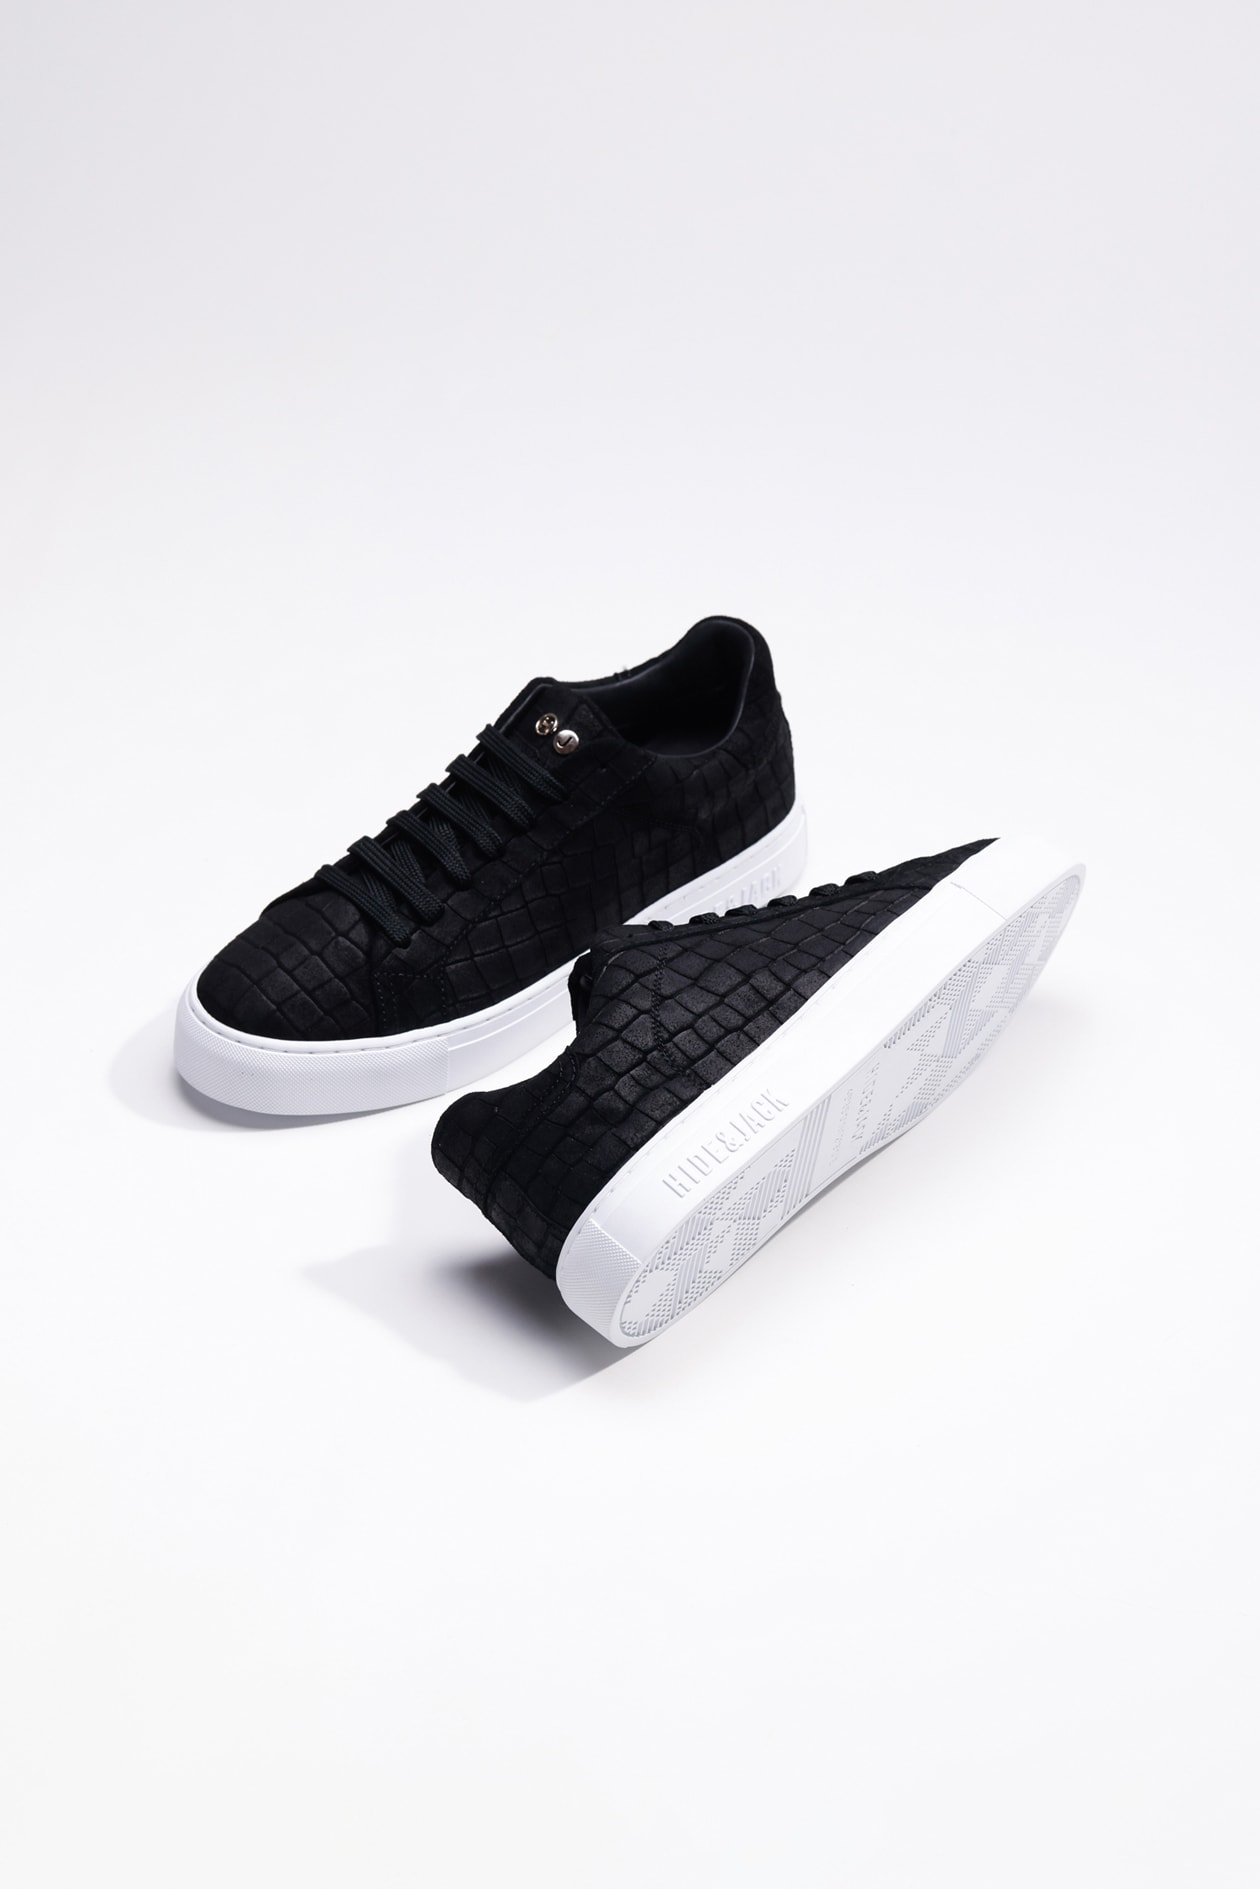 Hide & Jack Low Top Sneaker - Essence Suede Black